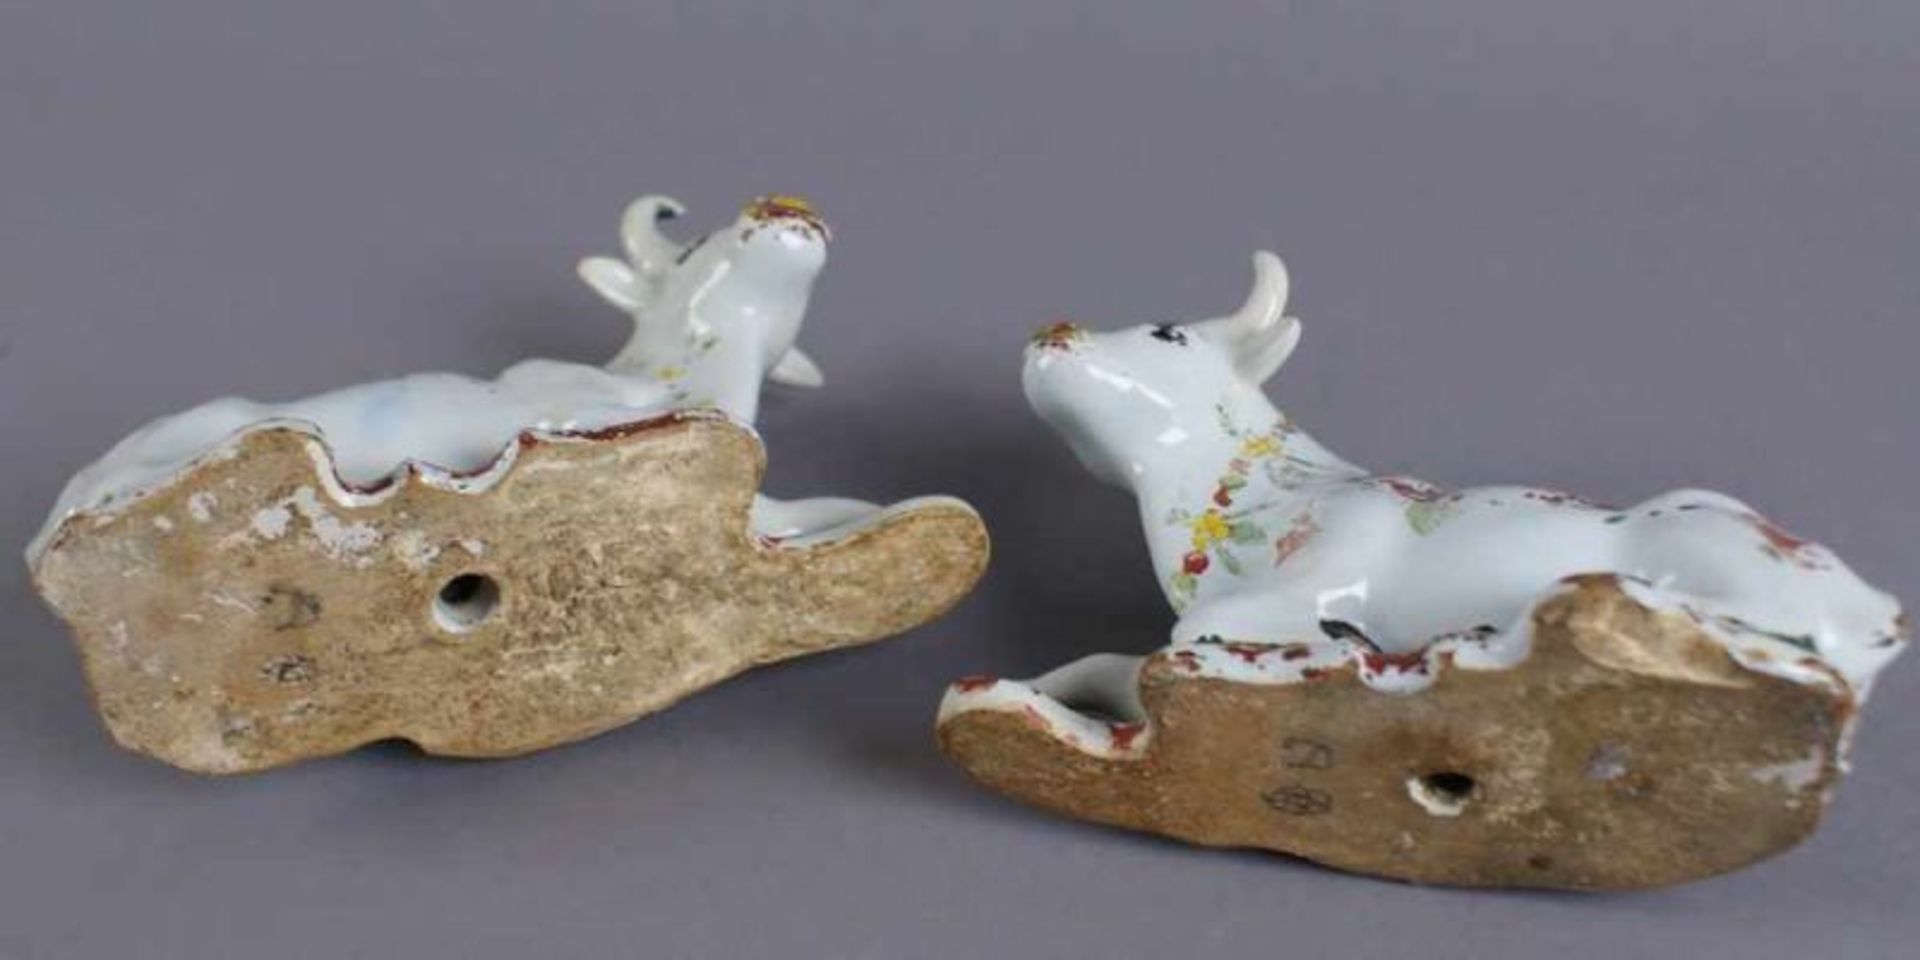 Zwei Kühe, Delft, bunt glasierte Keramik, 18. JH, alte Restaurierung, 10x15,5 x7 cm 20.17 % buyer' - Bild 12 aus 12